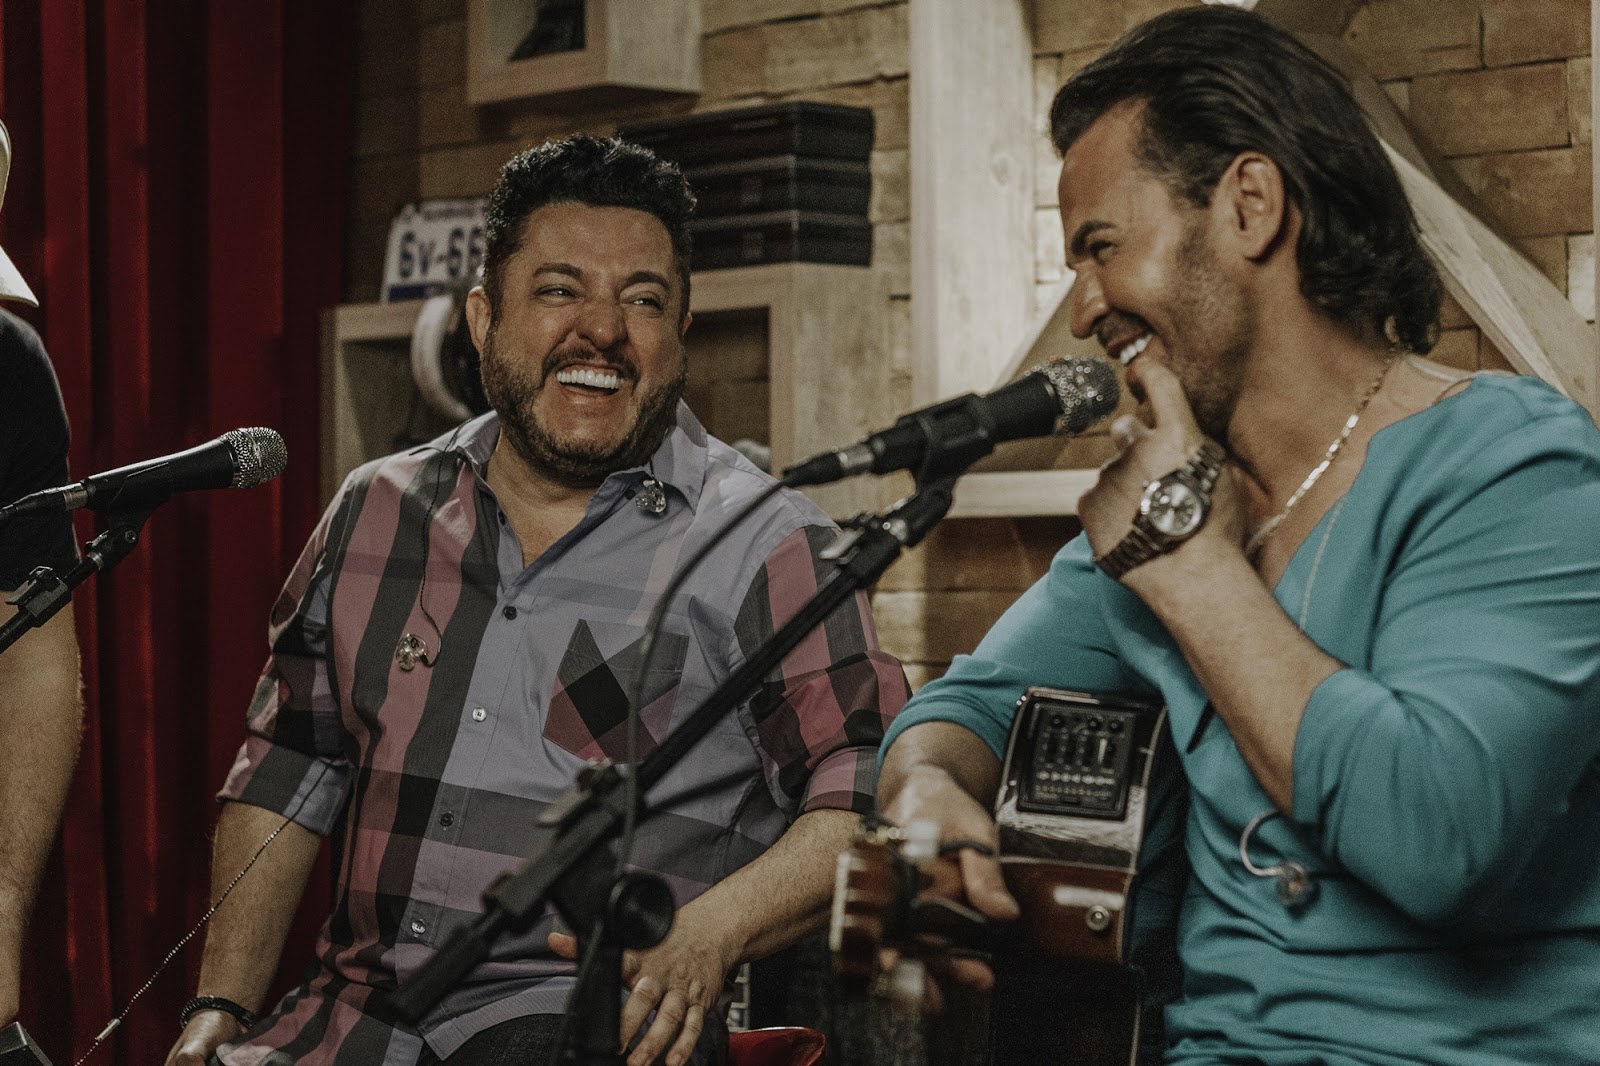 Improviso de qualidade: Eduardo Costa e Bruno cantam "Vida Pelo Avesso" 41